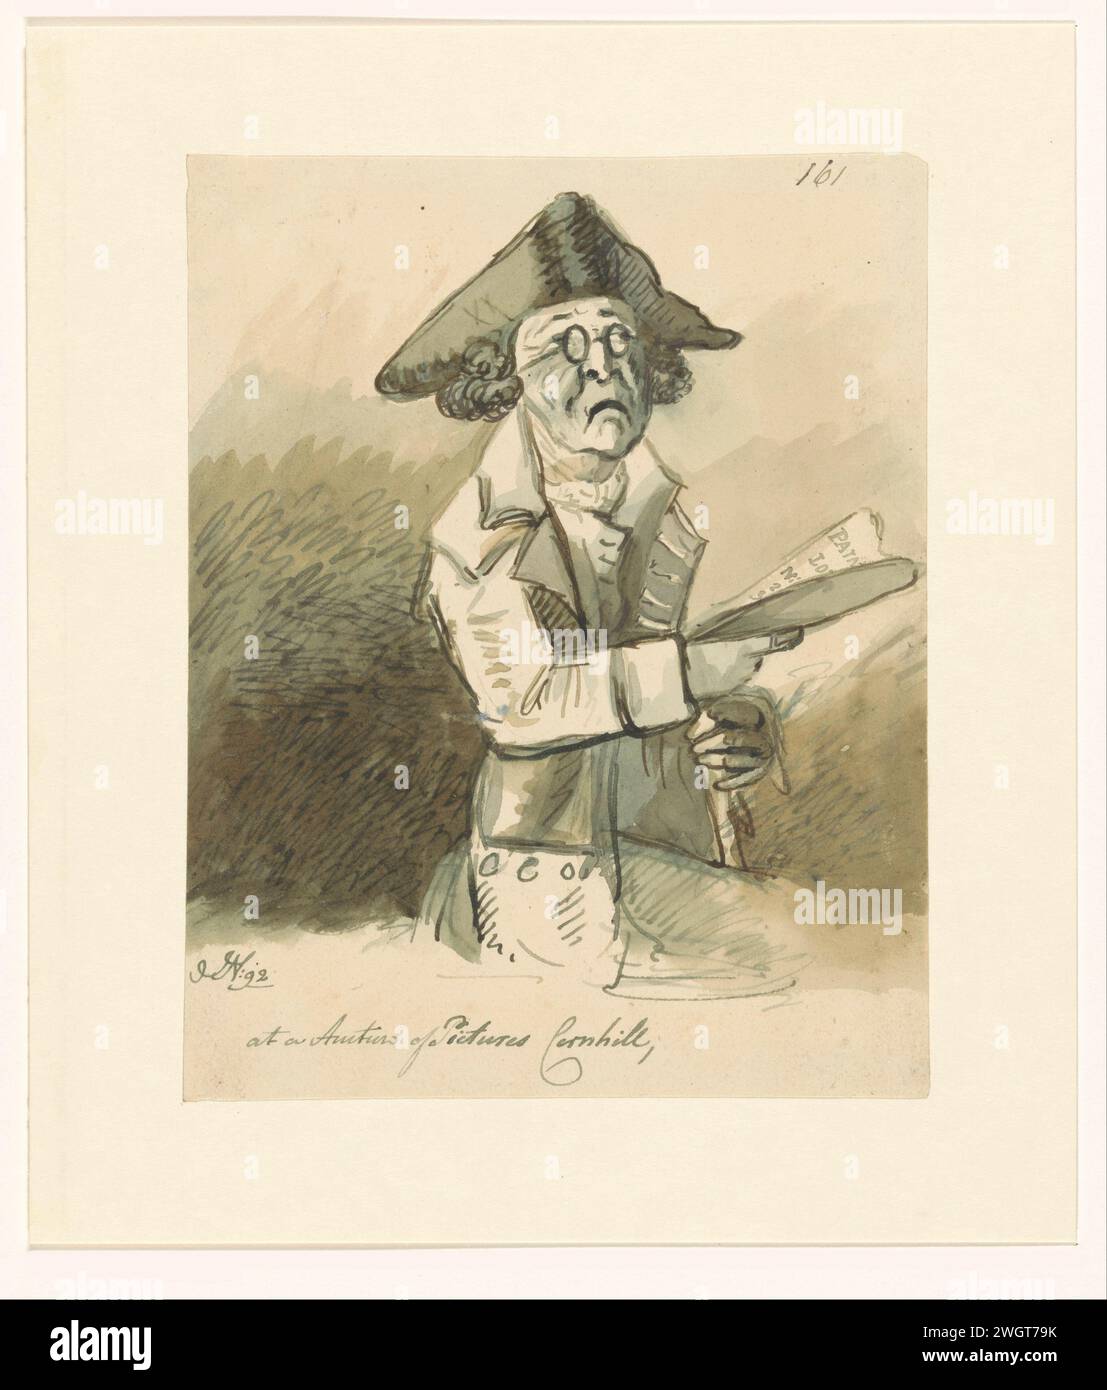 Mann in einer Malauktion, 1792 zeichnet Einen Mann mit Brille und dreieckigem Hut, einen Katalog in der Hand. Papier. Aquarellpinsel / Stiftkunst Verkauf, Auktion. Kunstsammlung. Kopf – Zahnrad: tricorn Stockfoto